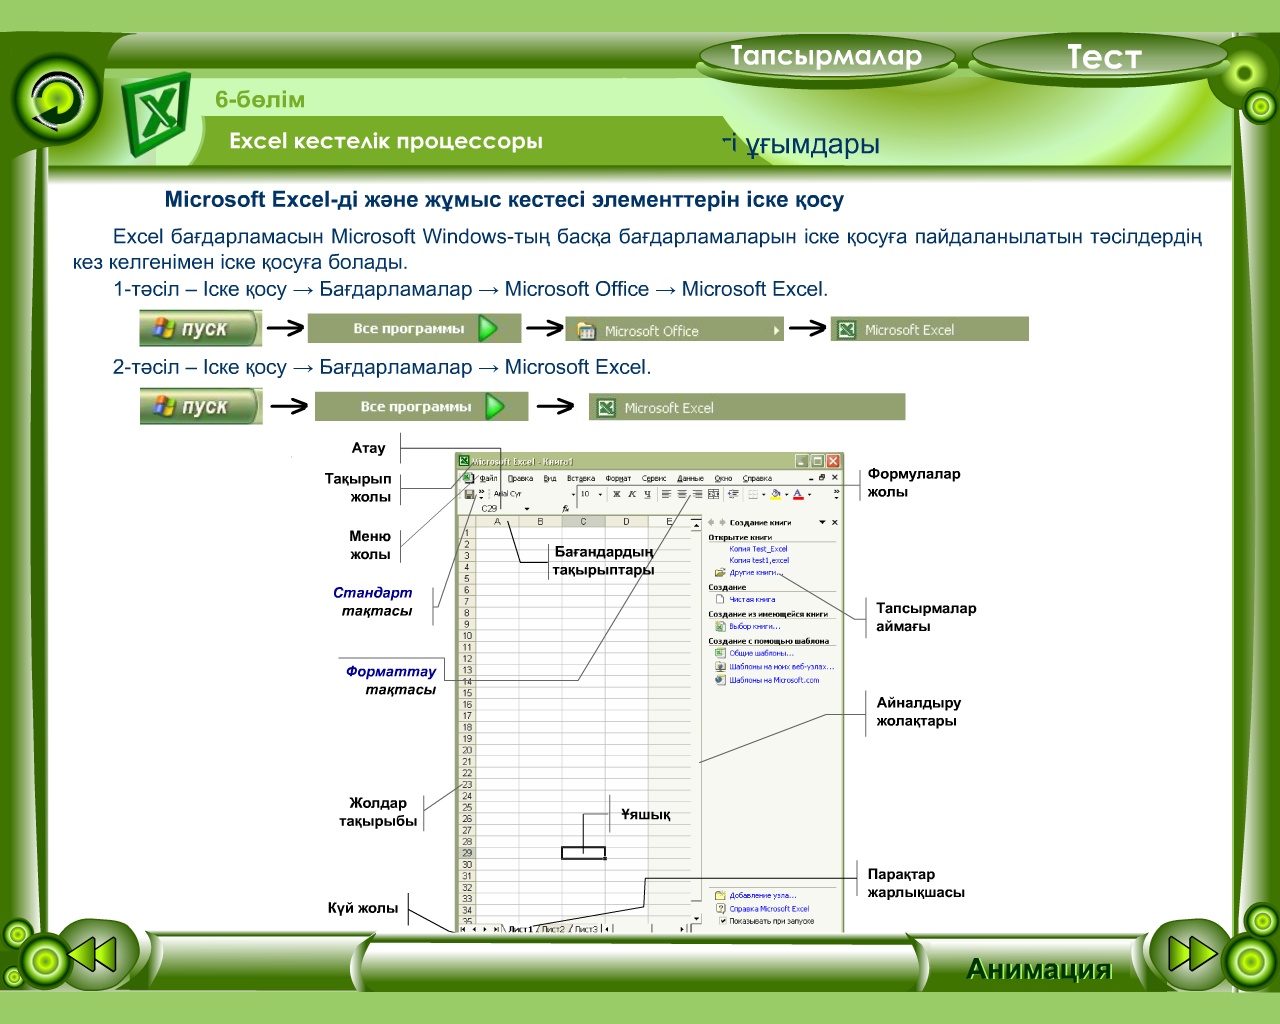 MS Excel кестелік процессоры